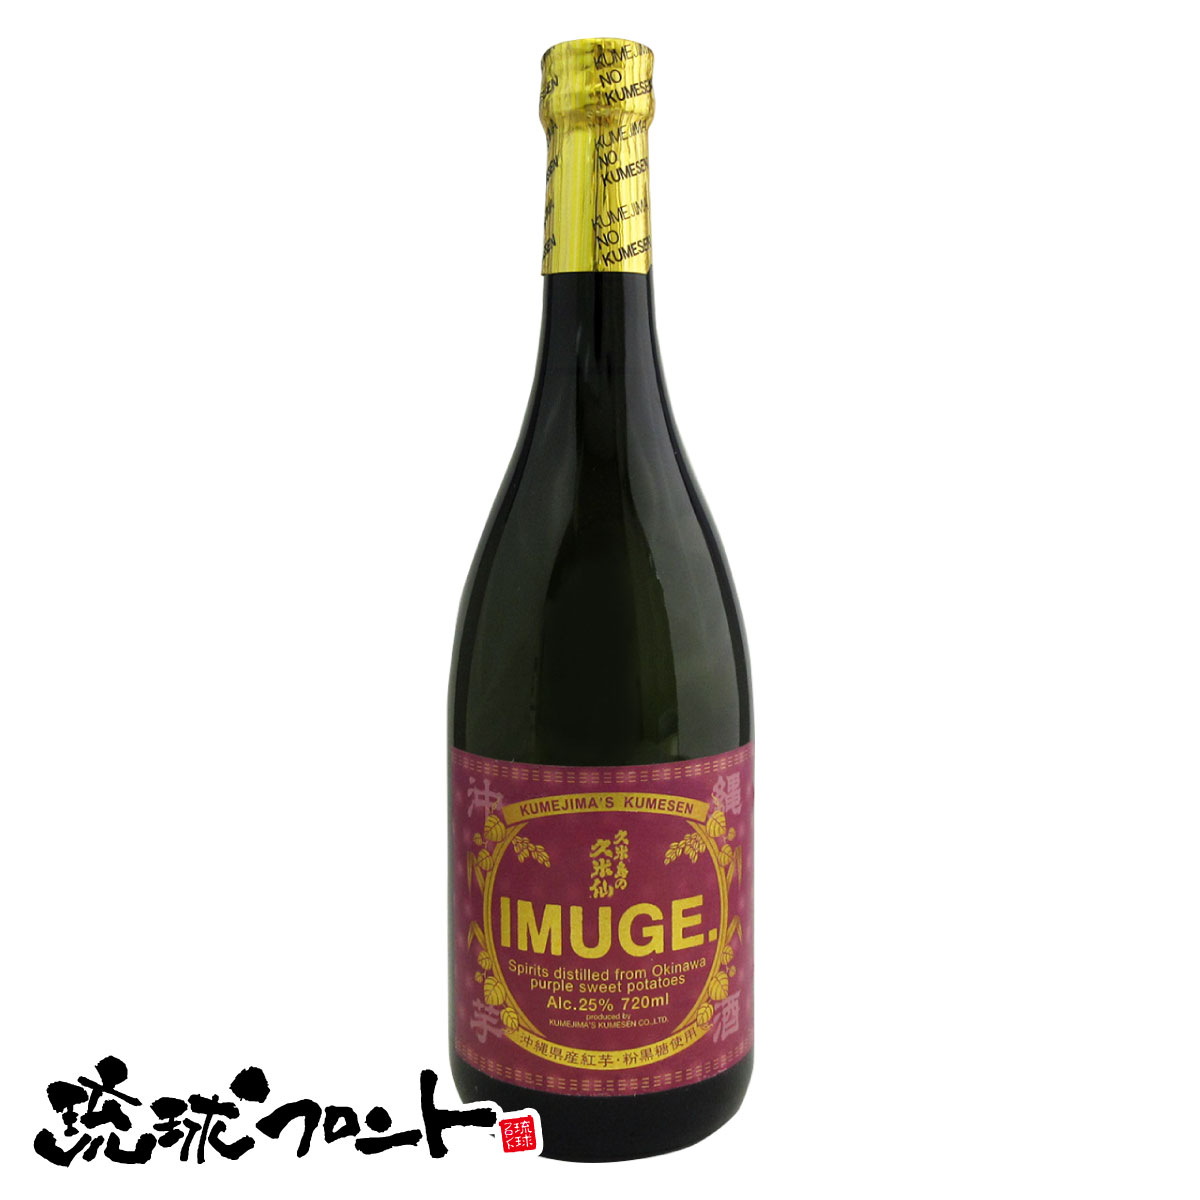 IMUGE イムゲー 久米島 25度 720ml 琉球 スピリッツ 沖縄 久米島の久米仙 芋酒